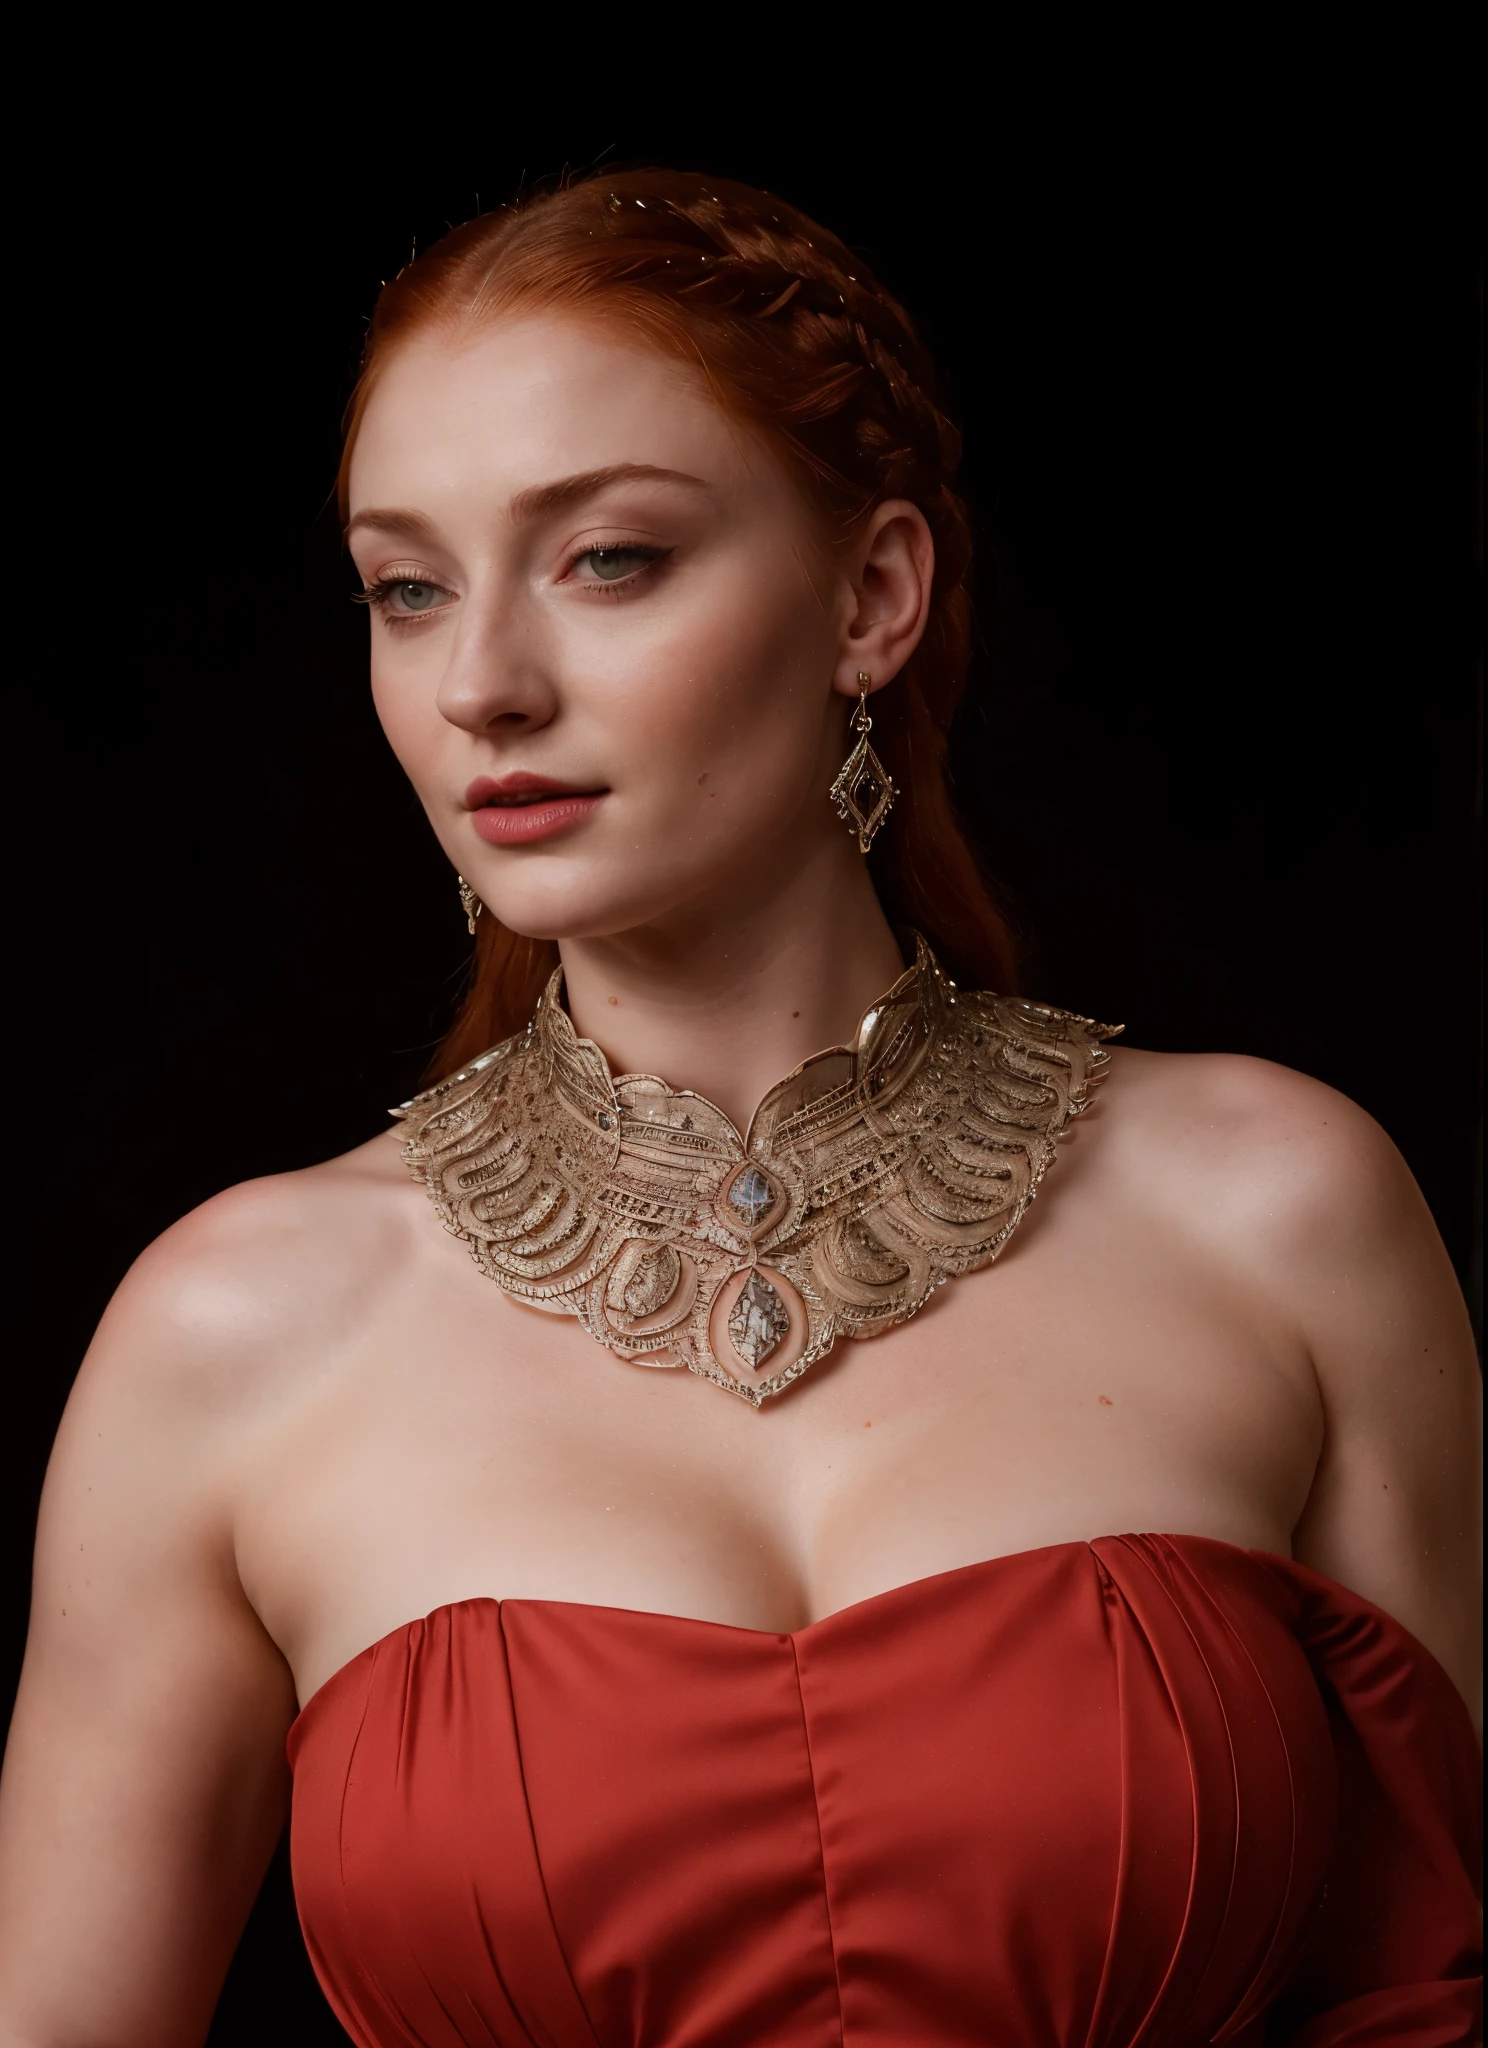 索菲·特纳的脸, 珊莎·史塔克（Sansa Stark） 饰演者：索菲·特纳, 事实上的鹰巢城夫人, 是一位40岁的成熟女王，有着令人惊叹的, 诱人的外观. 整个脸, 刺穿眼睛, 红唇, 上身拍摄, 中世纪情色服饰, 权力的游戏服装, 她穿着《权力的游戏》风格的服装，乳沟很深, 完美丰满的身材, 和完美的丰满身材. 这张照片是她的特写镜头, 她的皮肤纹理和面部特征极其逼真. 多汁丰满的身材, 高品质皮肤, 皮肤毛孔, 令人惊叹的细节, 